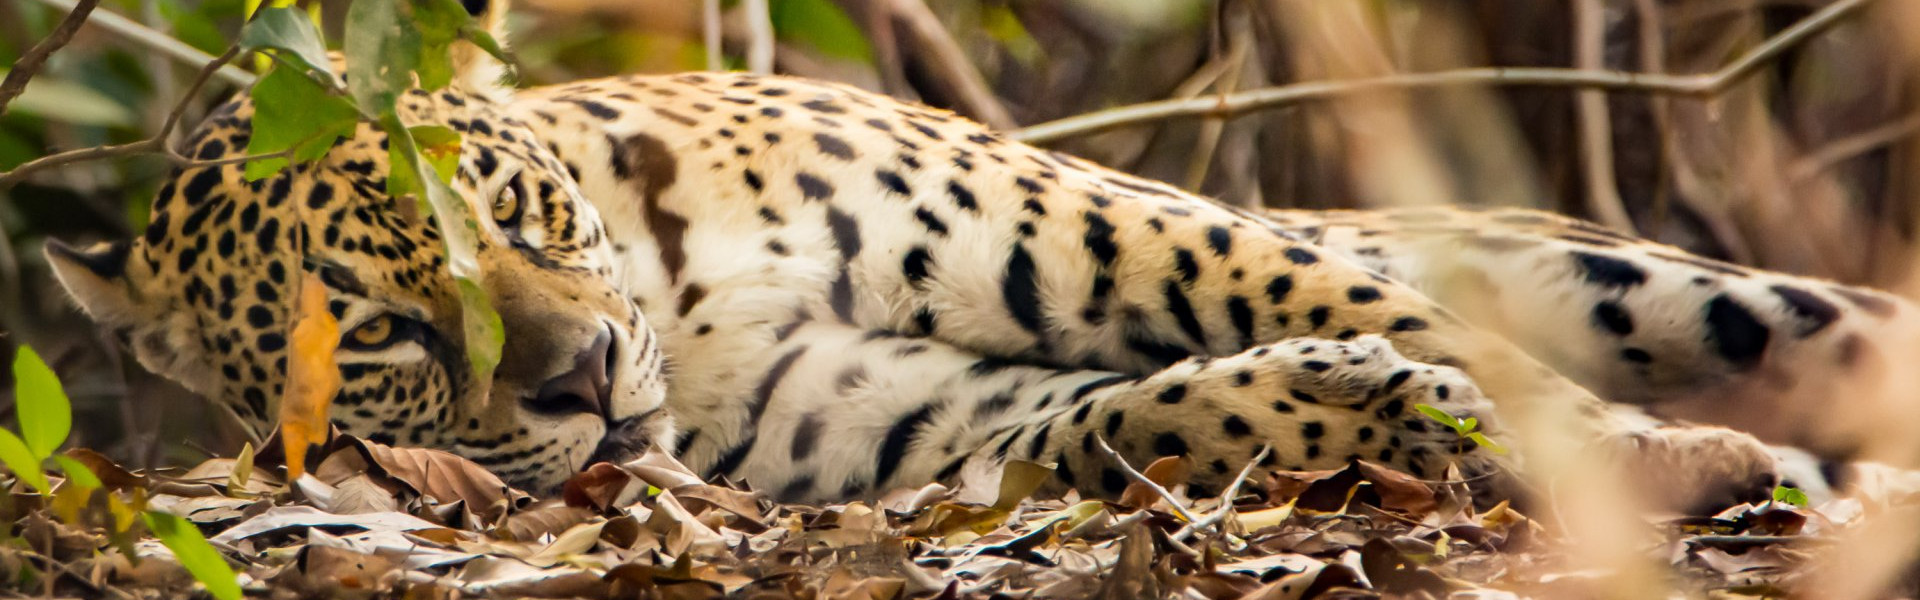 Brasilien, Pantanal, Jaguar (Foto: Rainer Skrovny, ARR-Reisen)